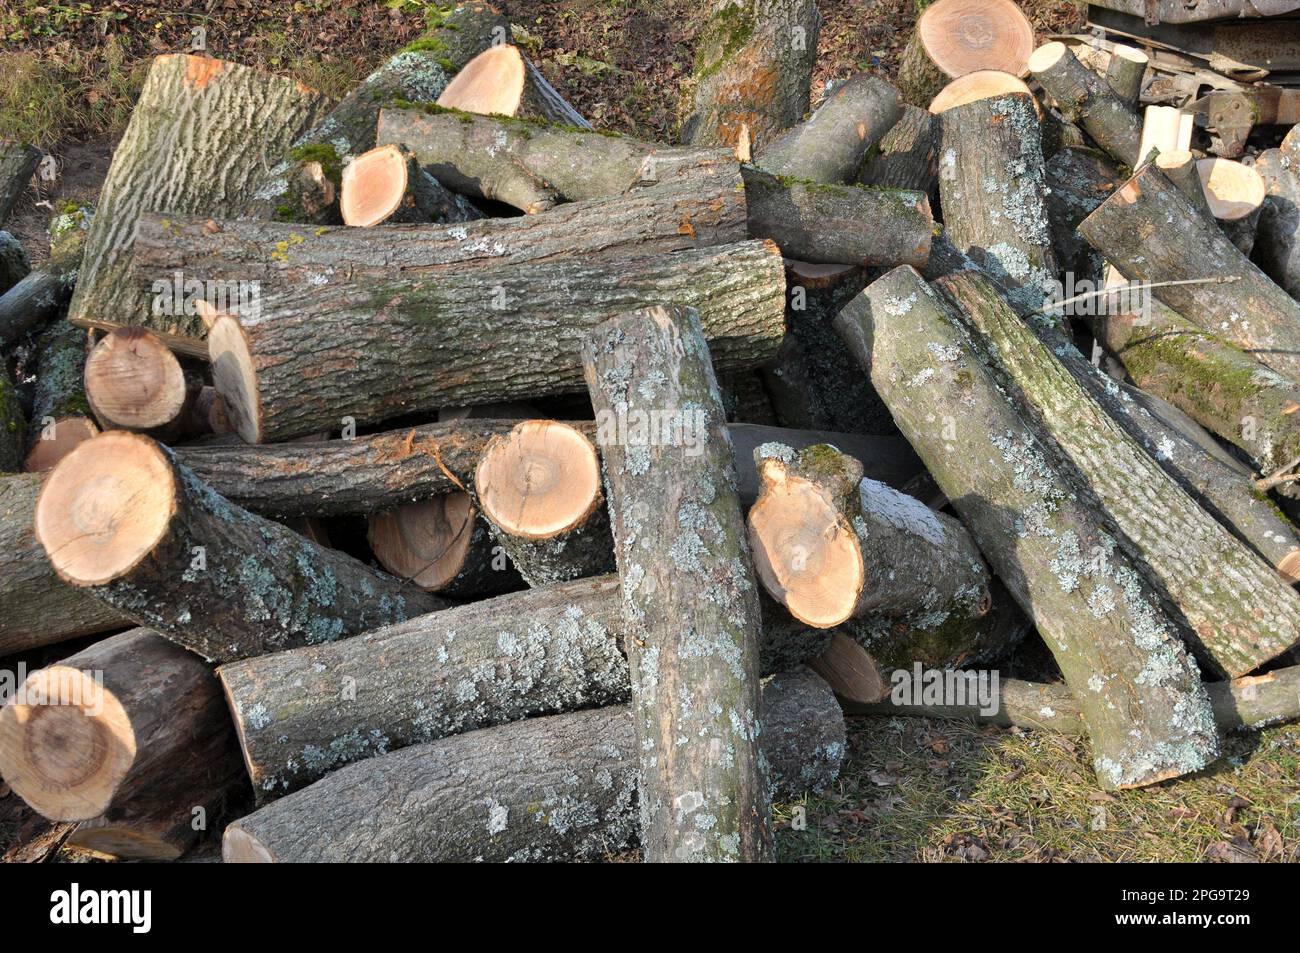 Gathering wood logs on Craiyon